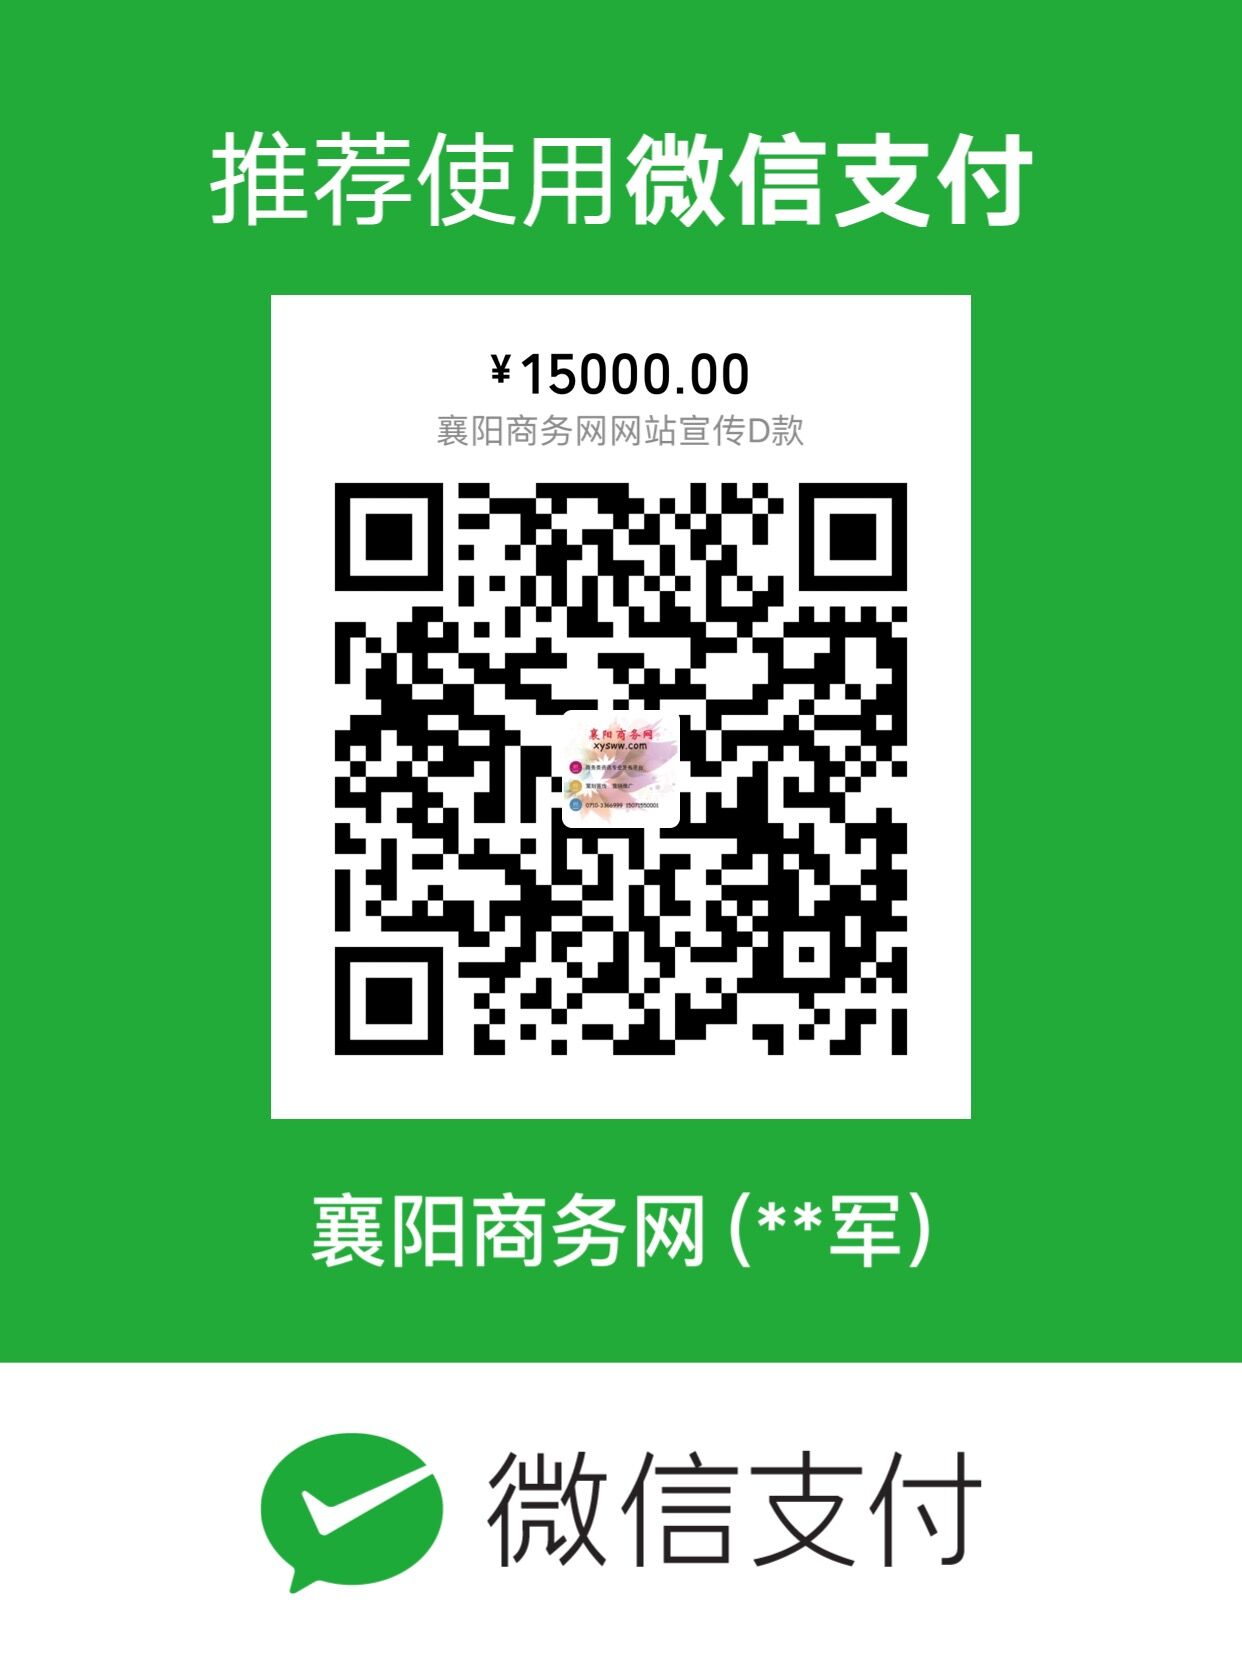 襄阳商务网网站宣传D款15000元收款码